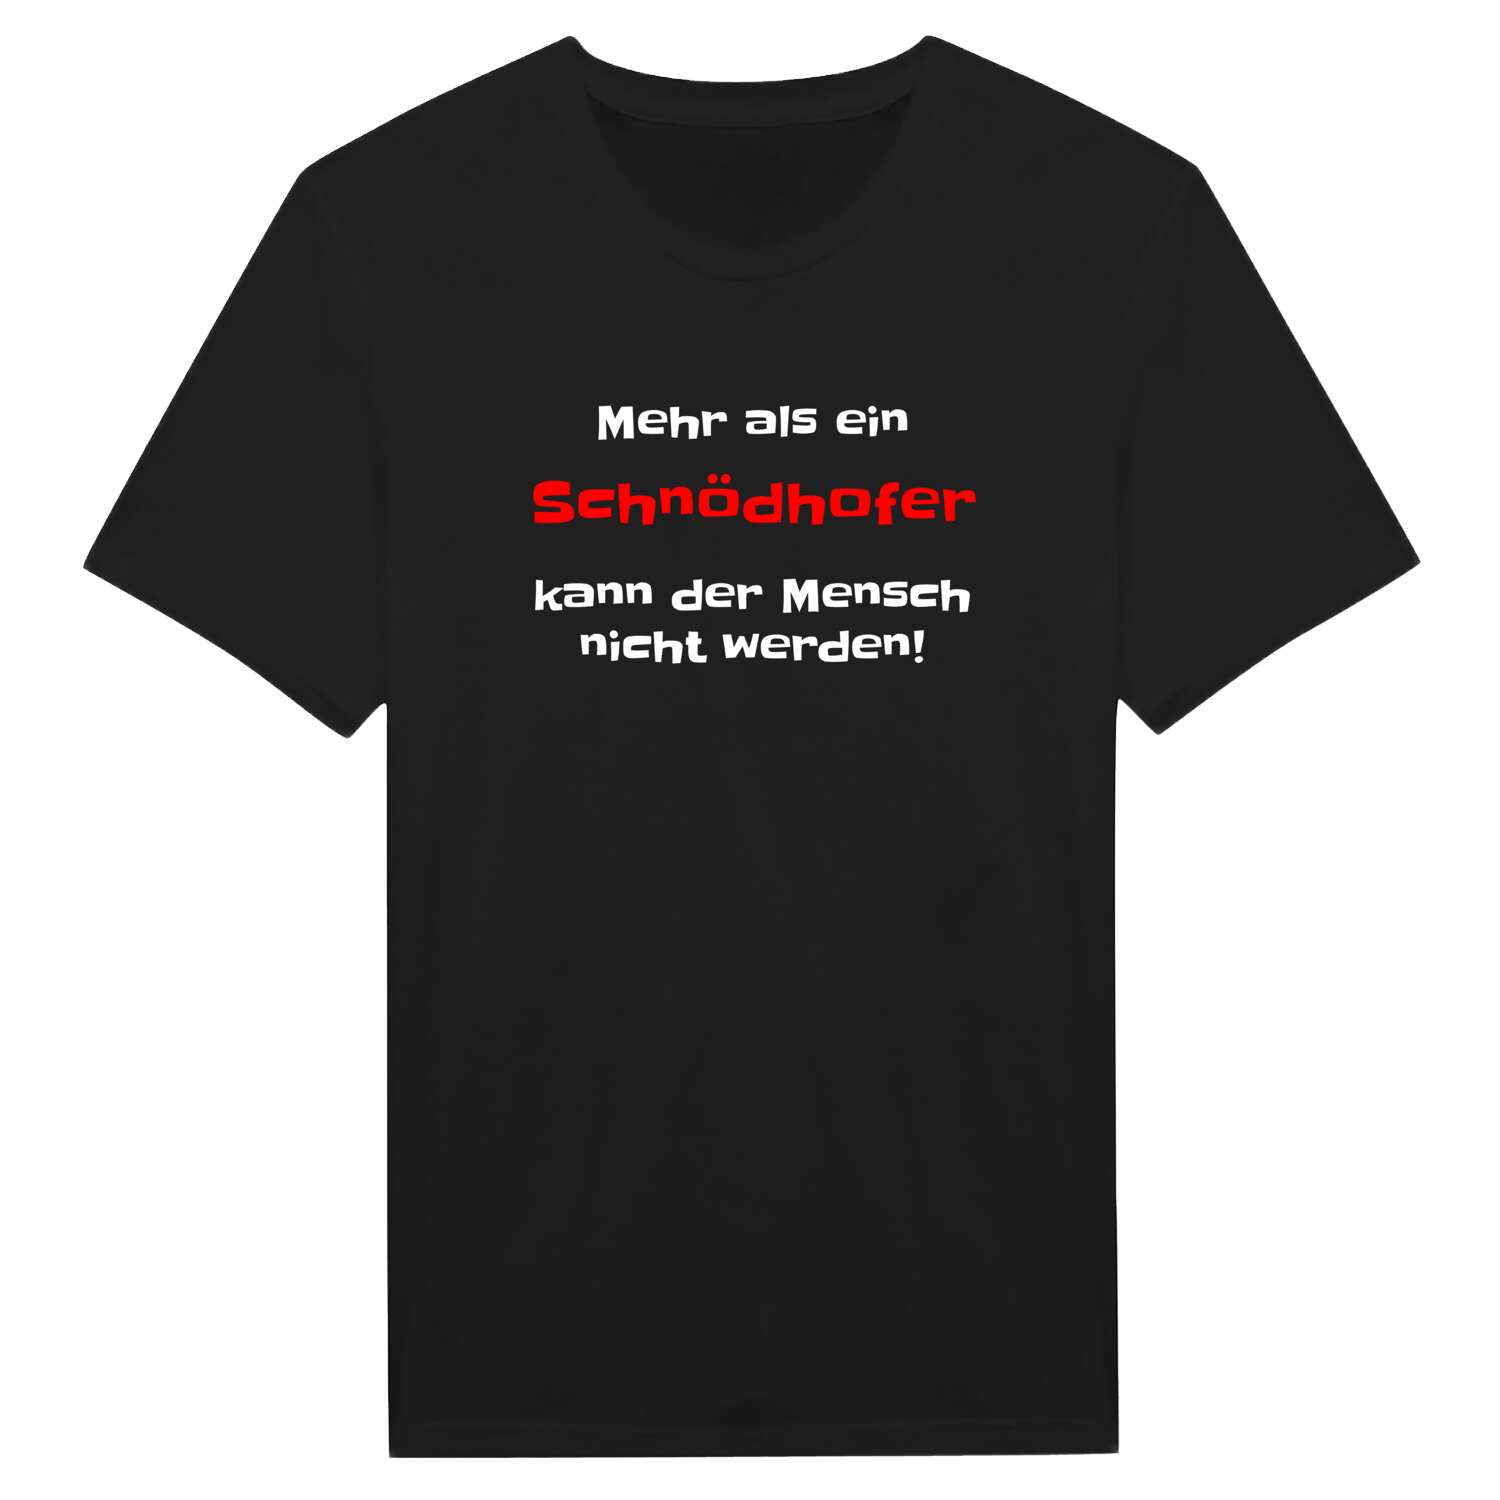 Schnödhof T-Shirt »Mehr als ein«